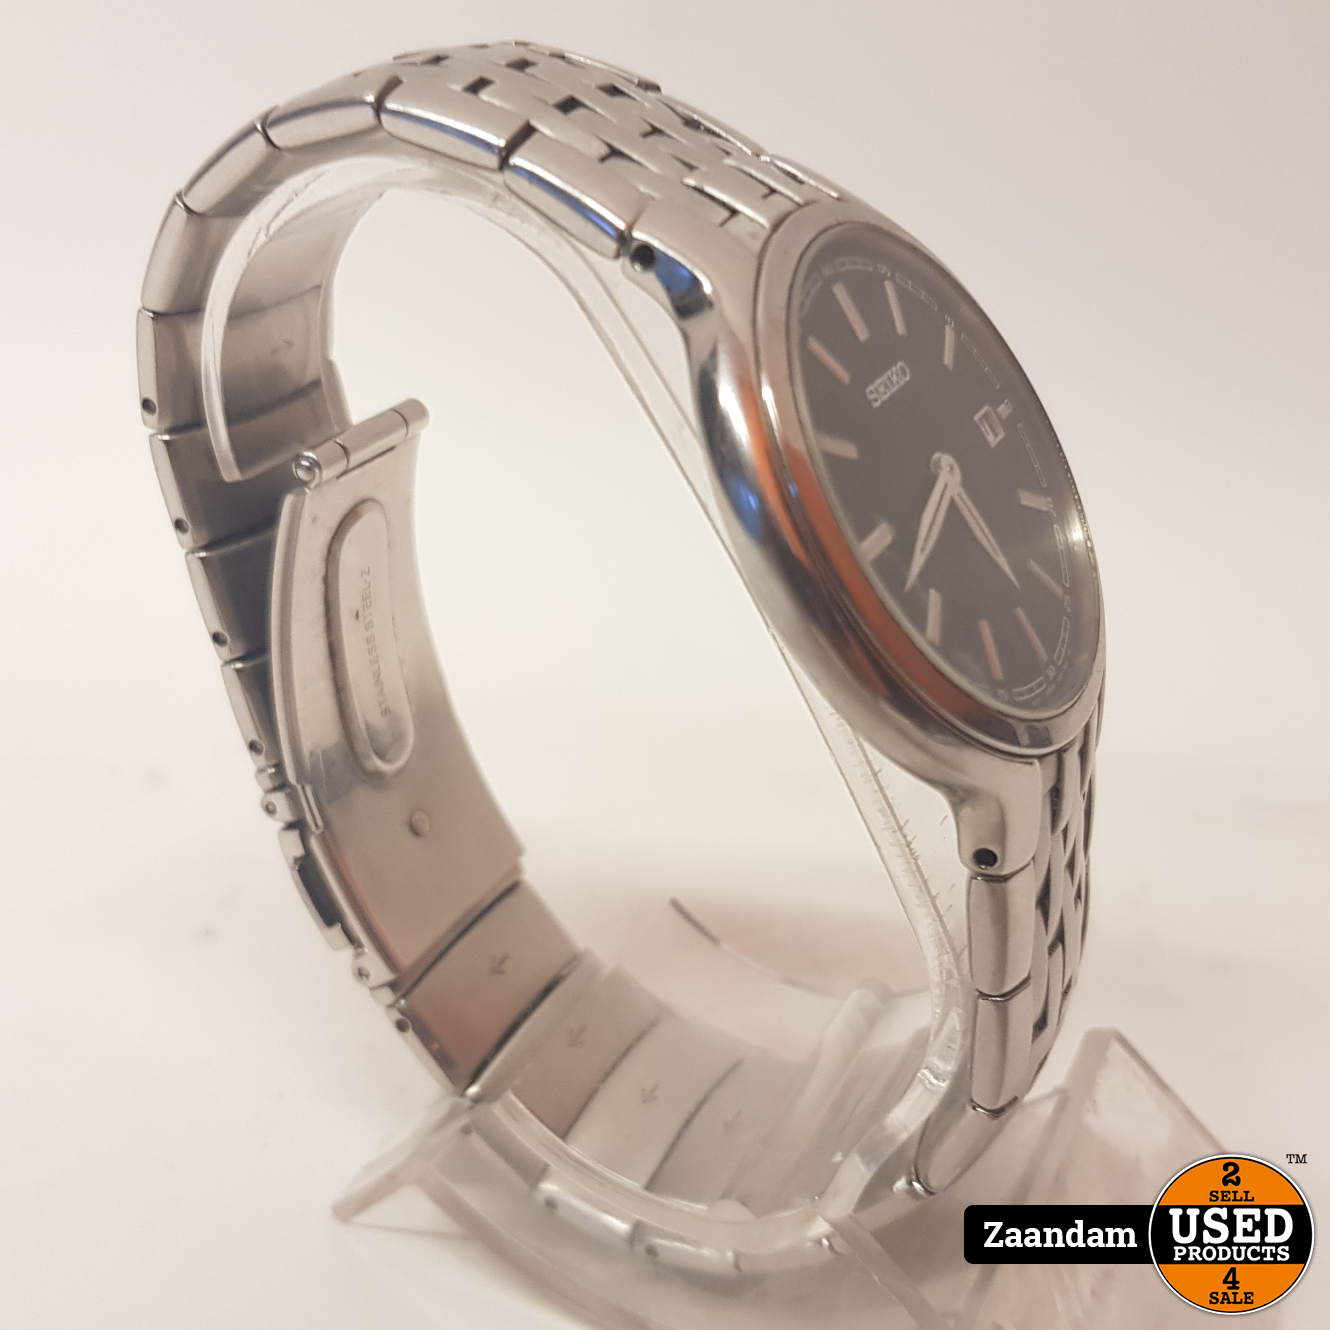 Orkaan Gecomprimeerd verdediging Seiko 7N39-0AX0 Horloge | Quartz | In nette staat - Used Products Zaandam